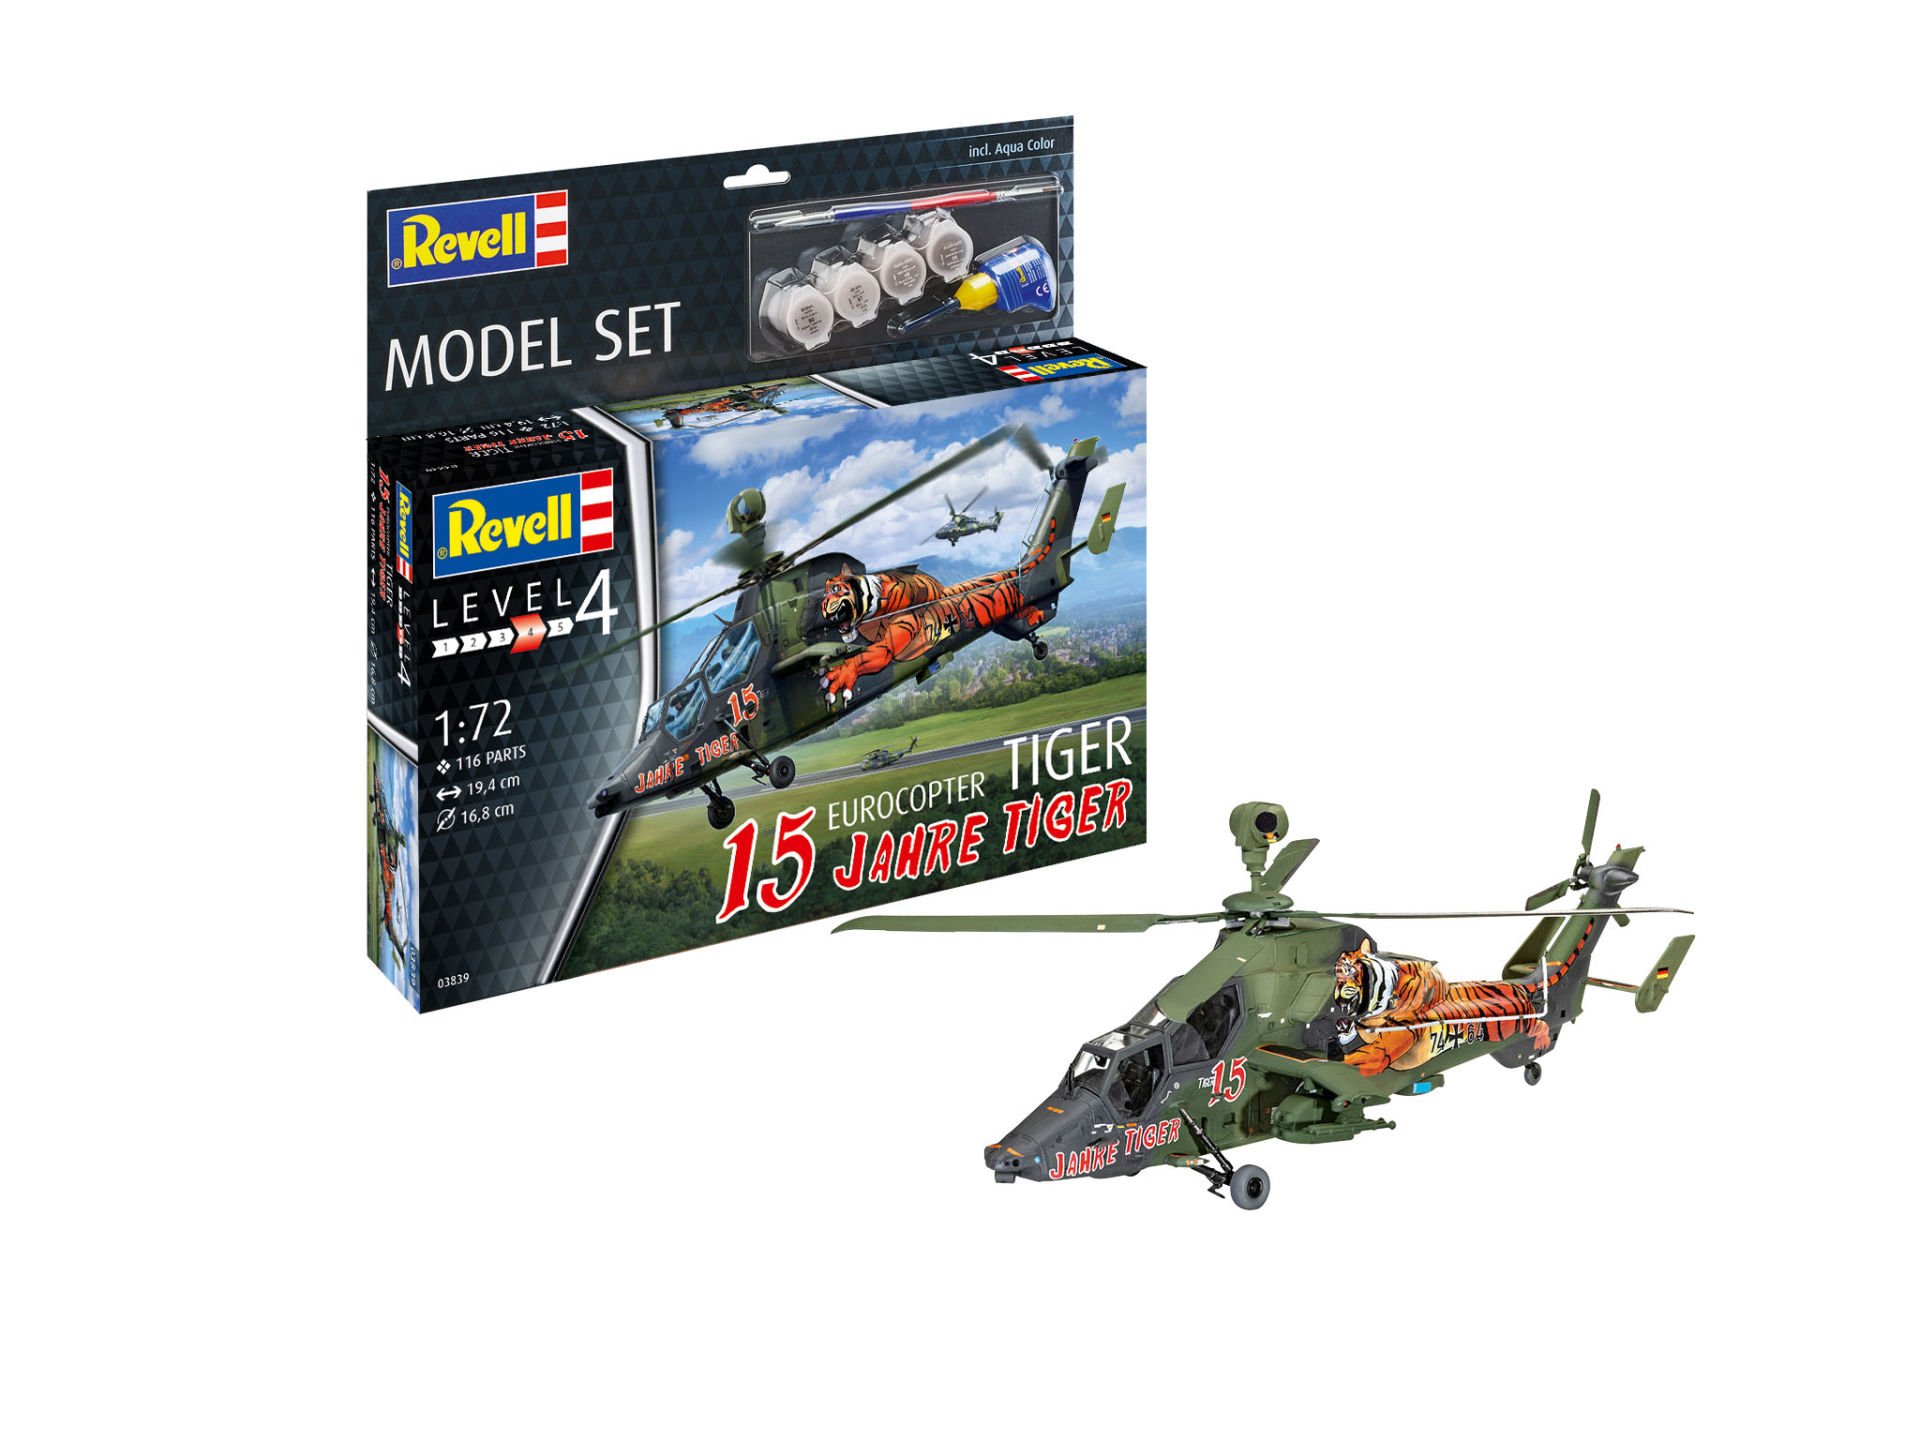 M.Set Eurocopter Tiger ''15 Jahre Tiger''